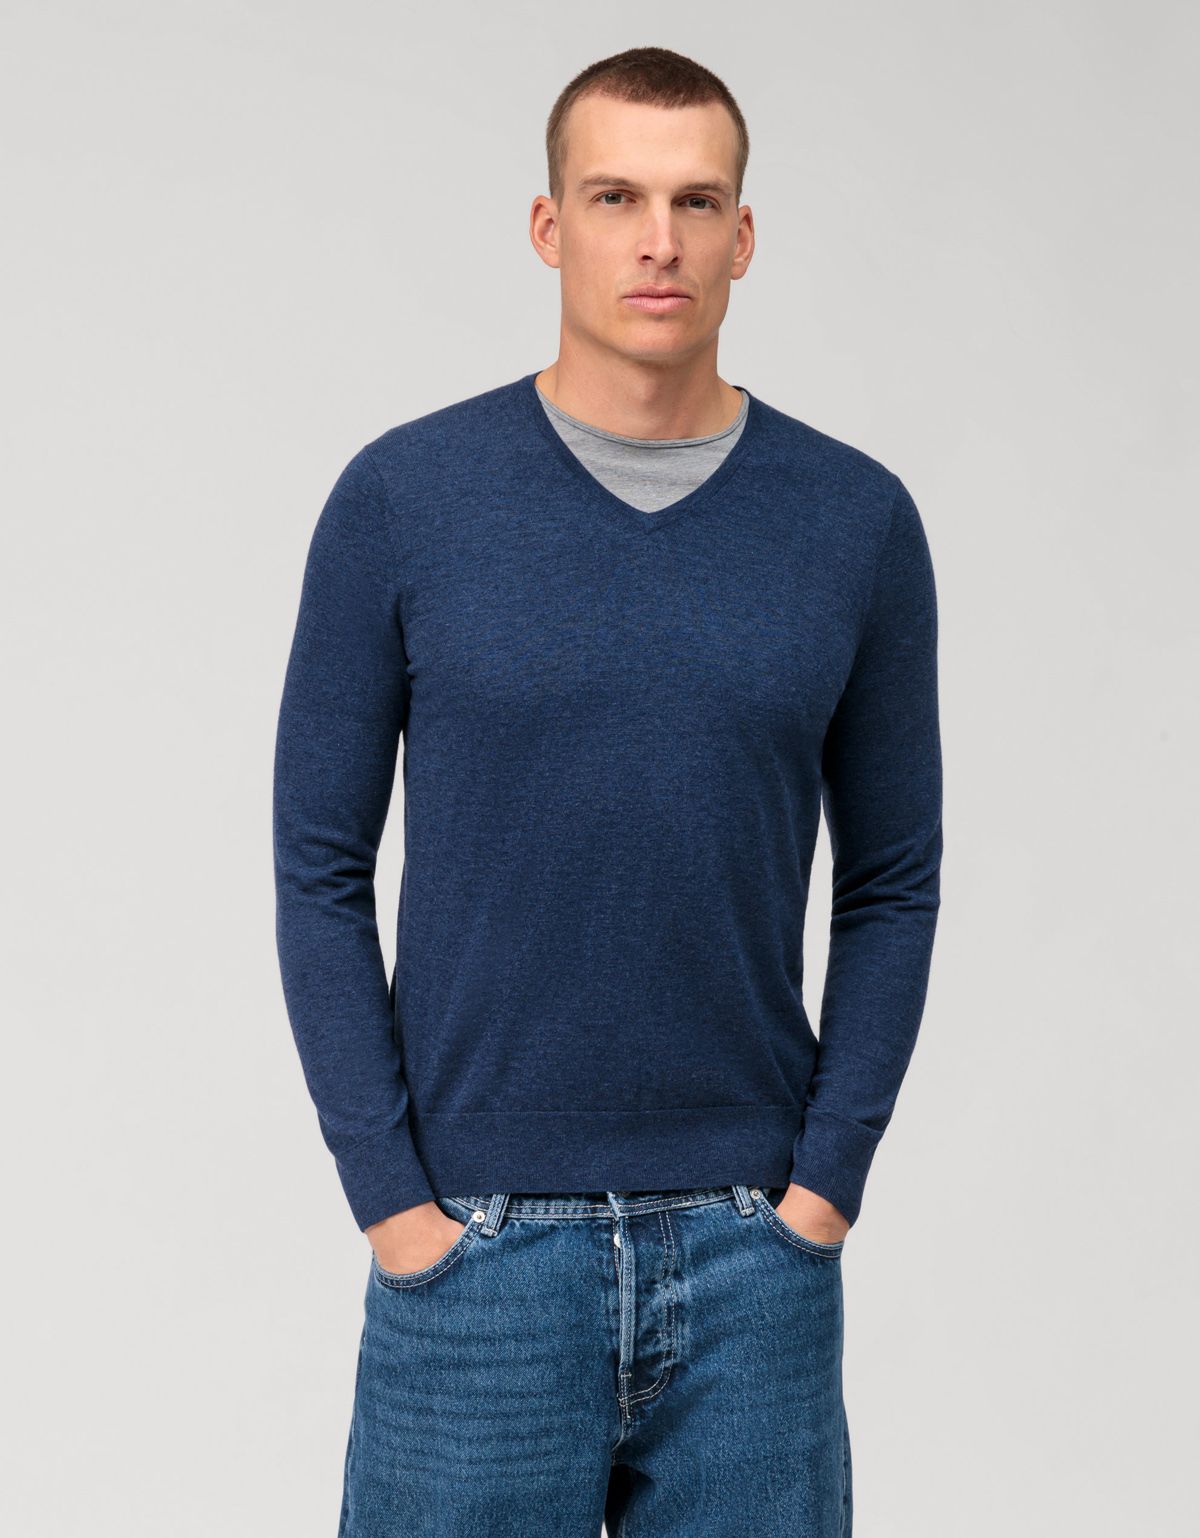 Пуловер голубой мужской OLYMP, body fit[ГОЛУБОЙ]